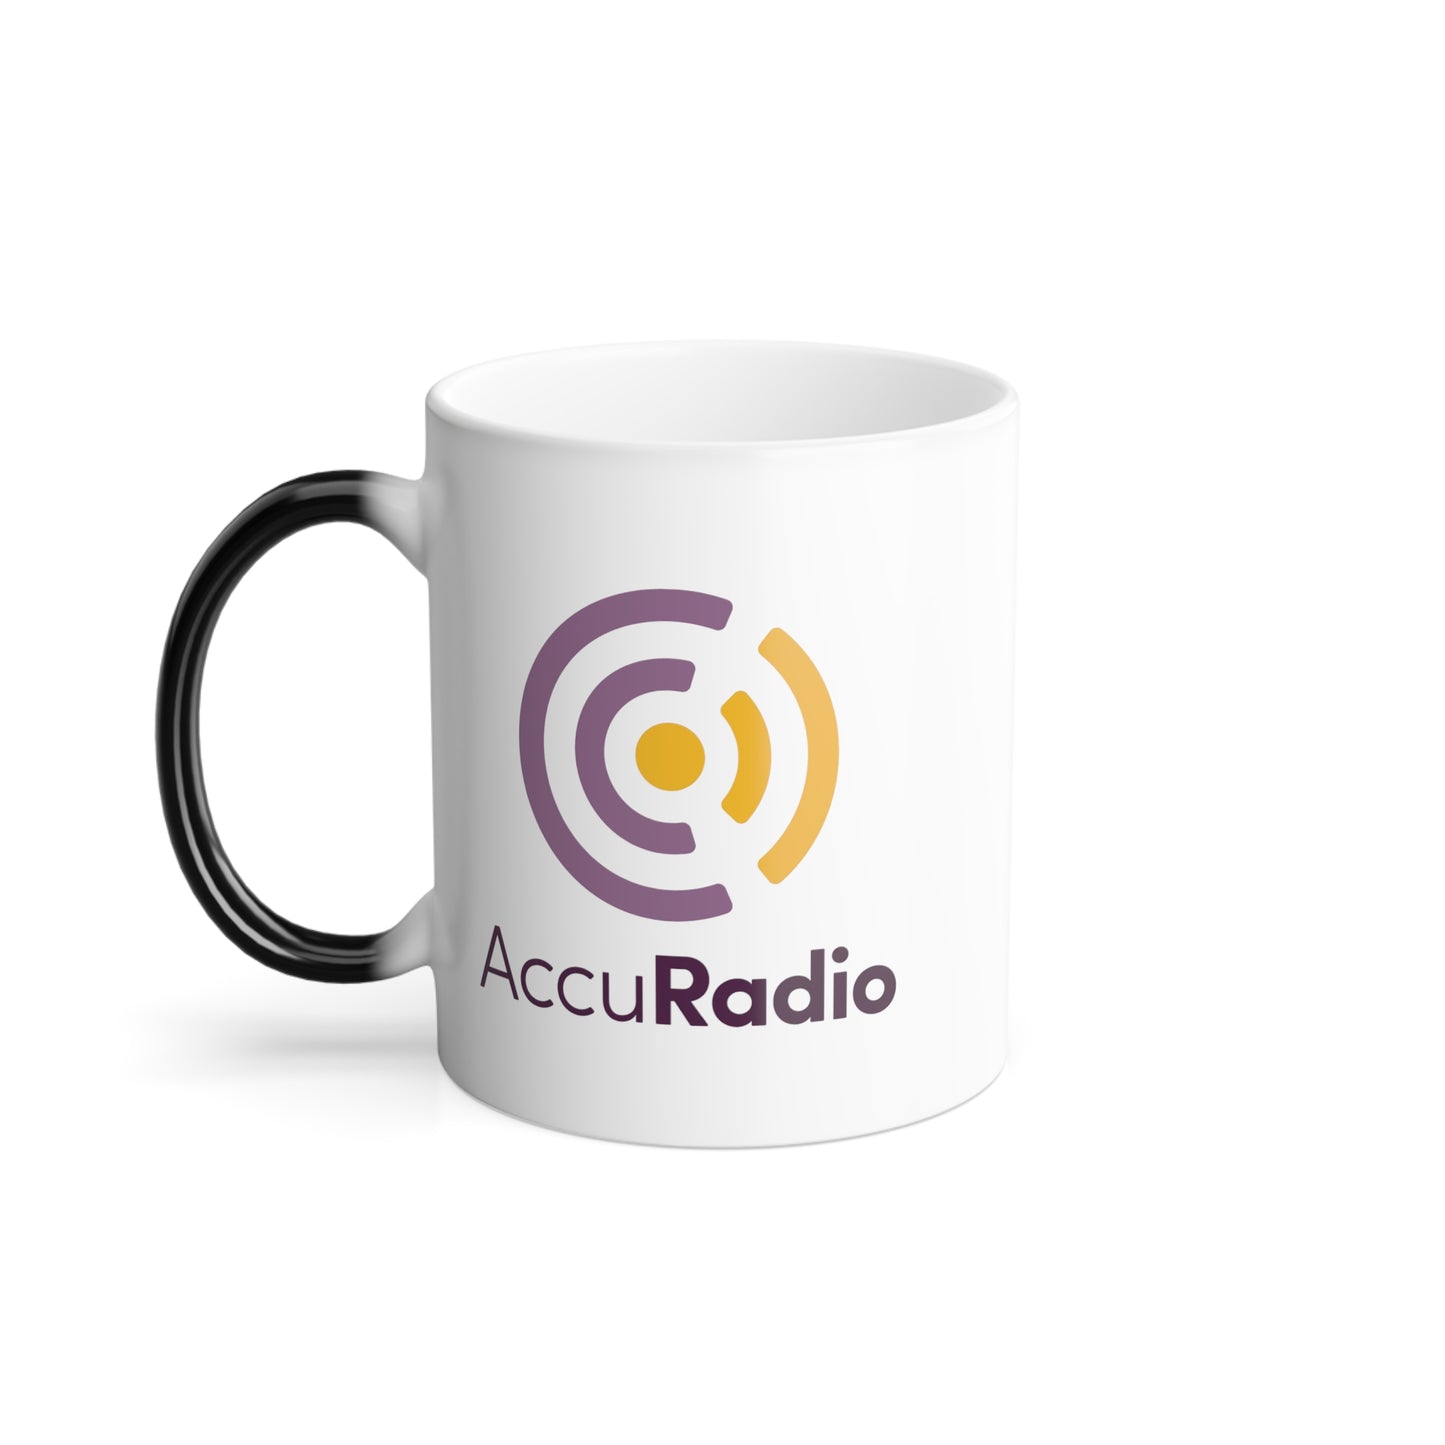 AccuRadio magic mug